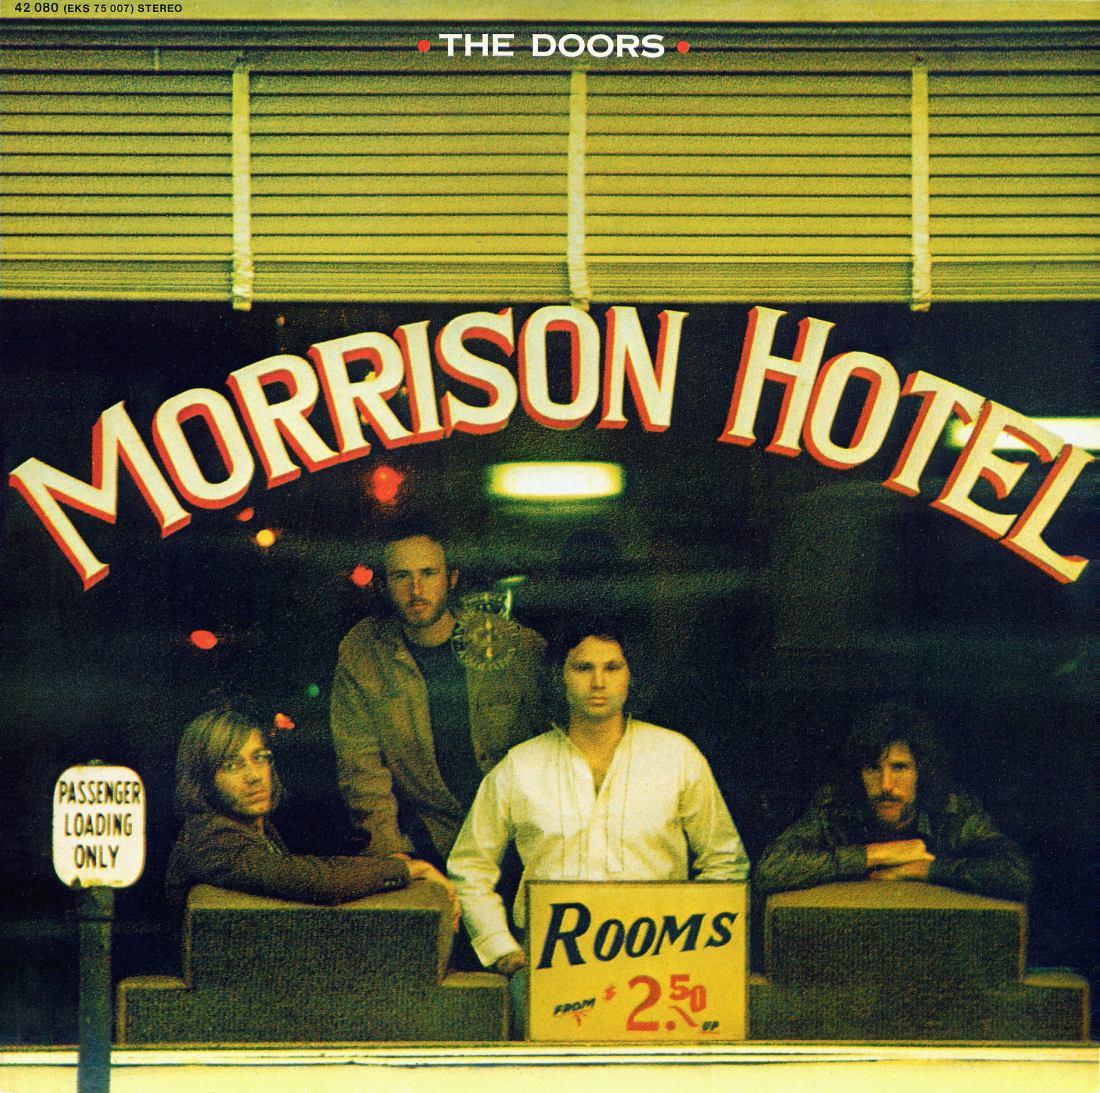 Doors_Morrison Hotel_1